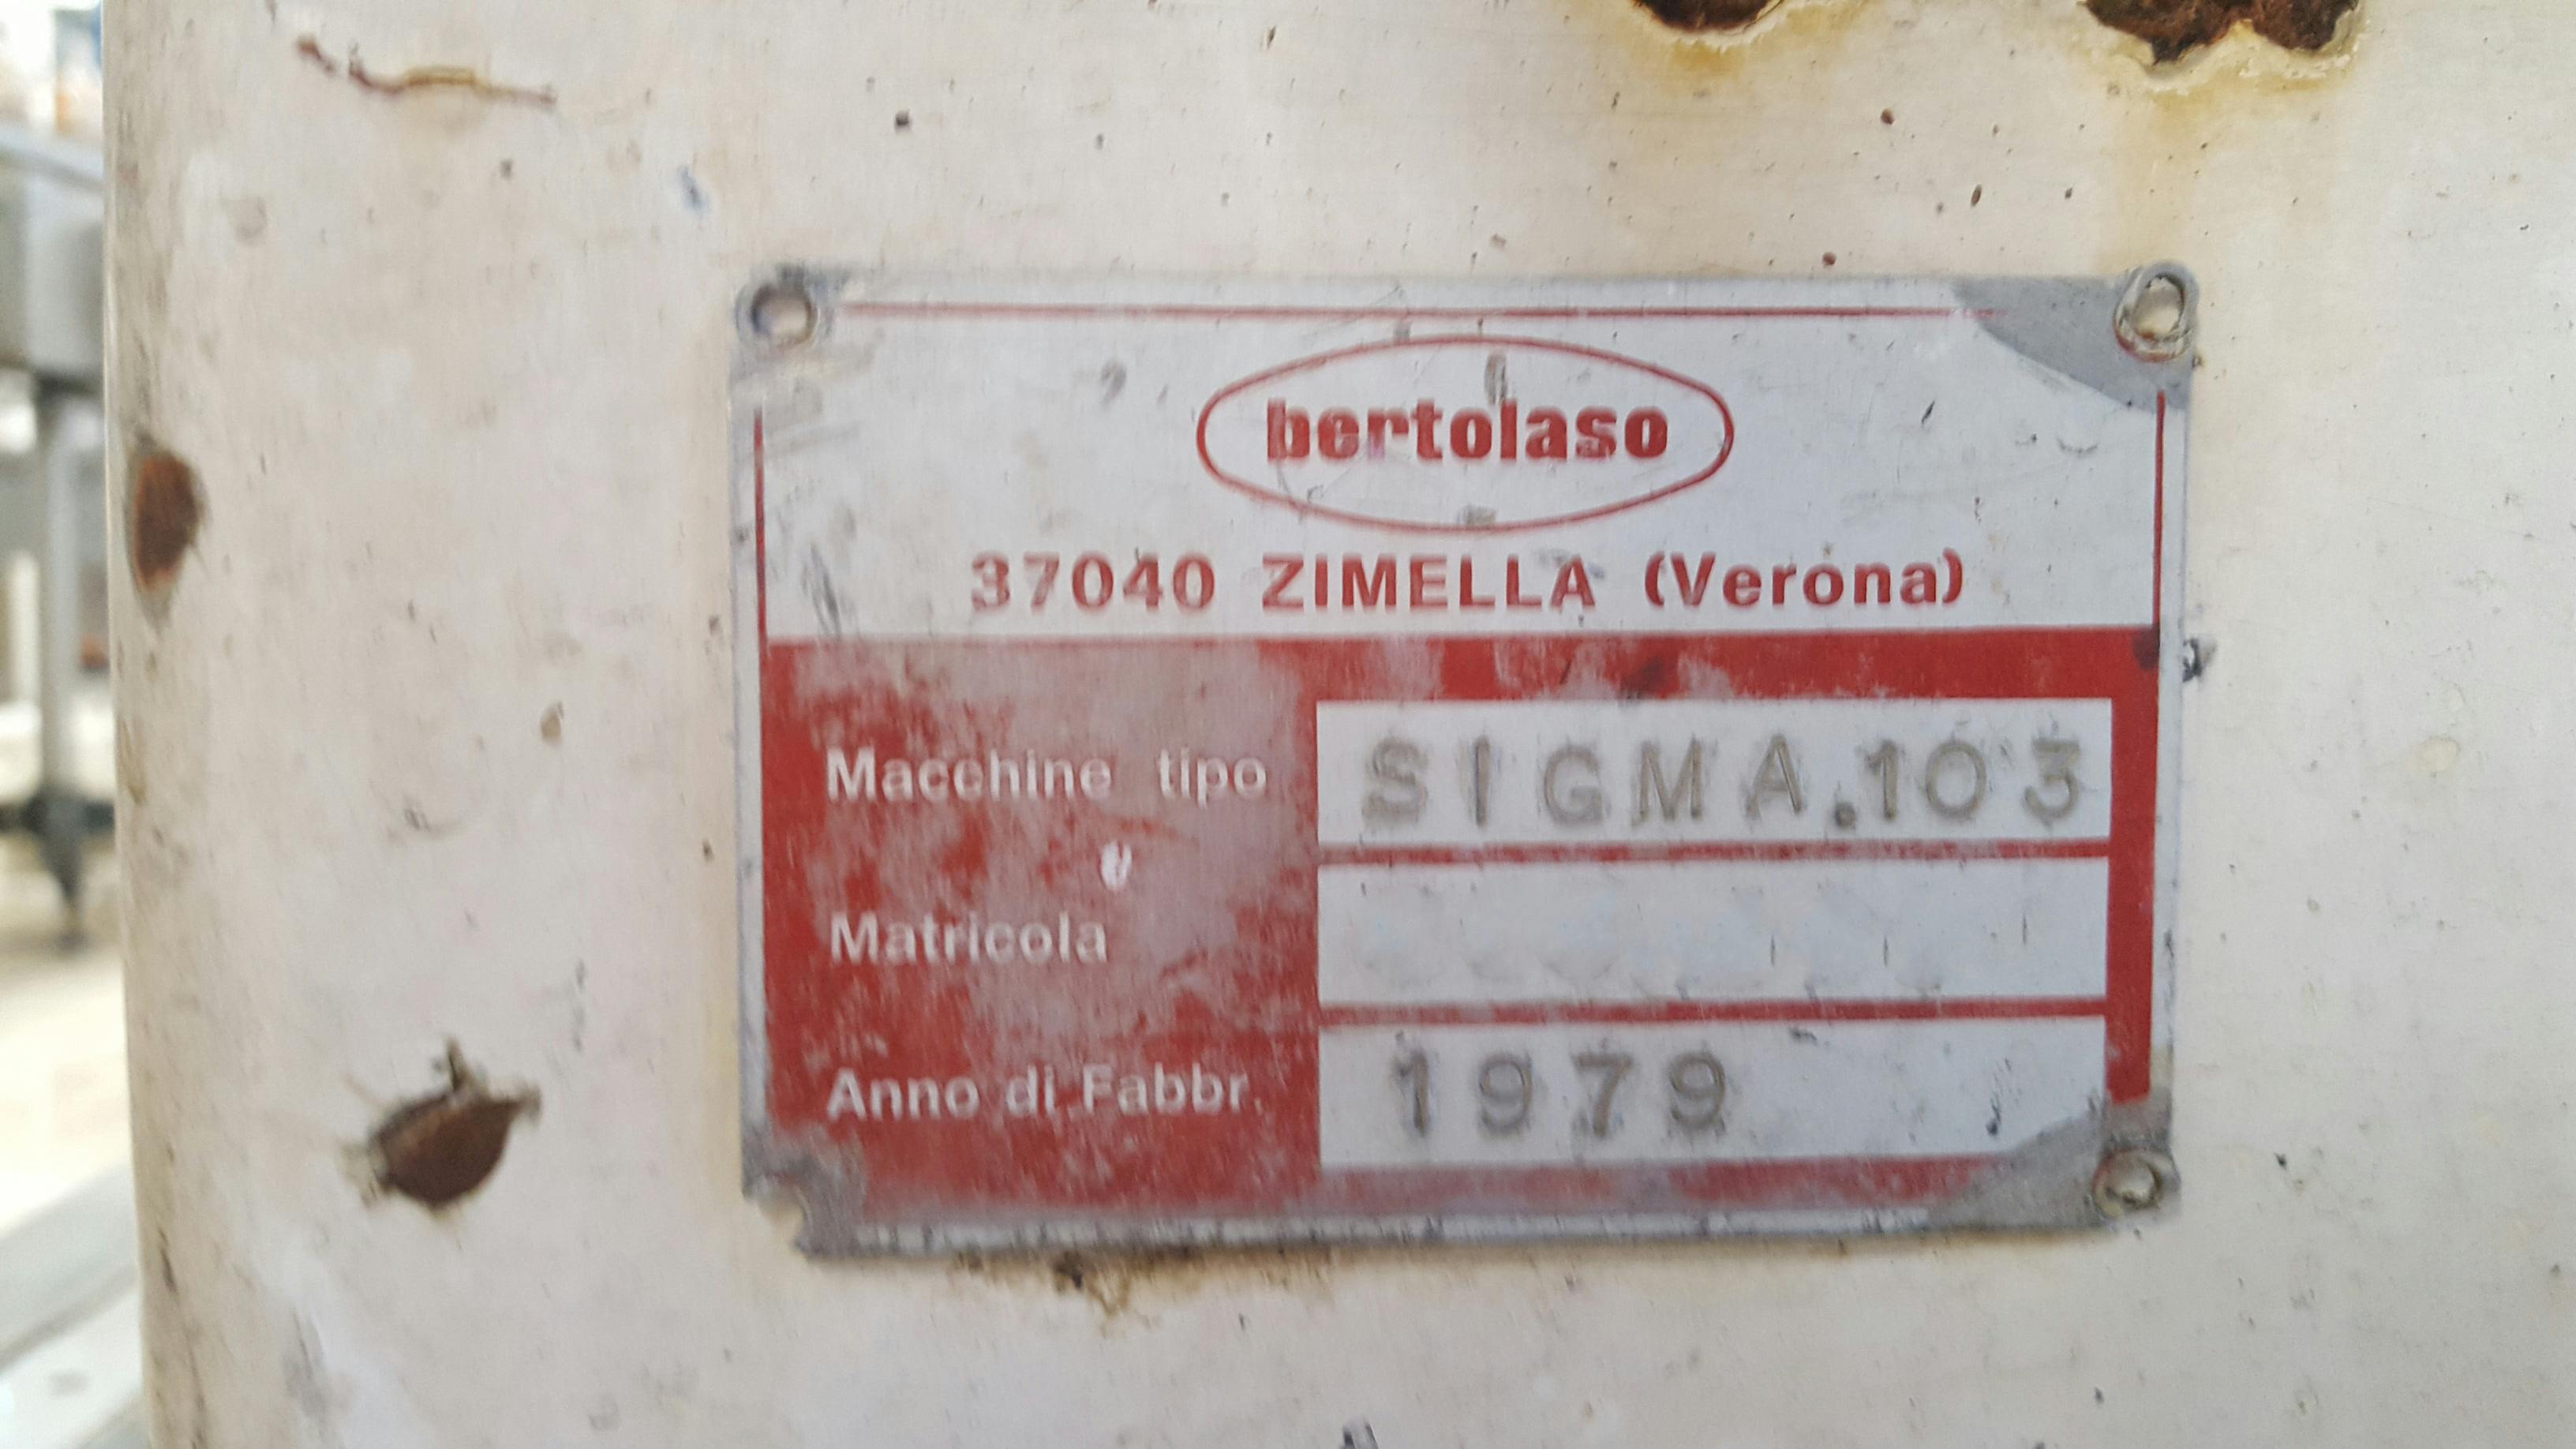 Výrobní štítek Bertolaso Sigma 103